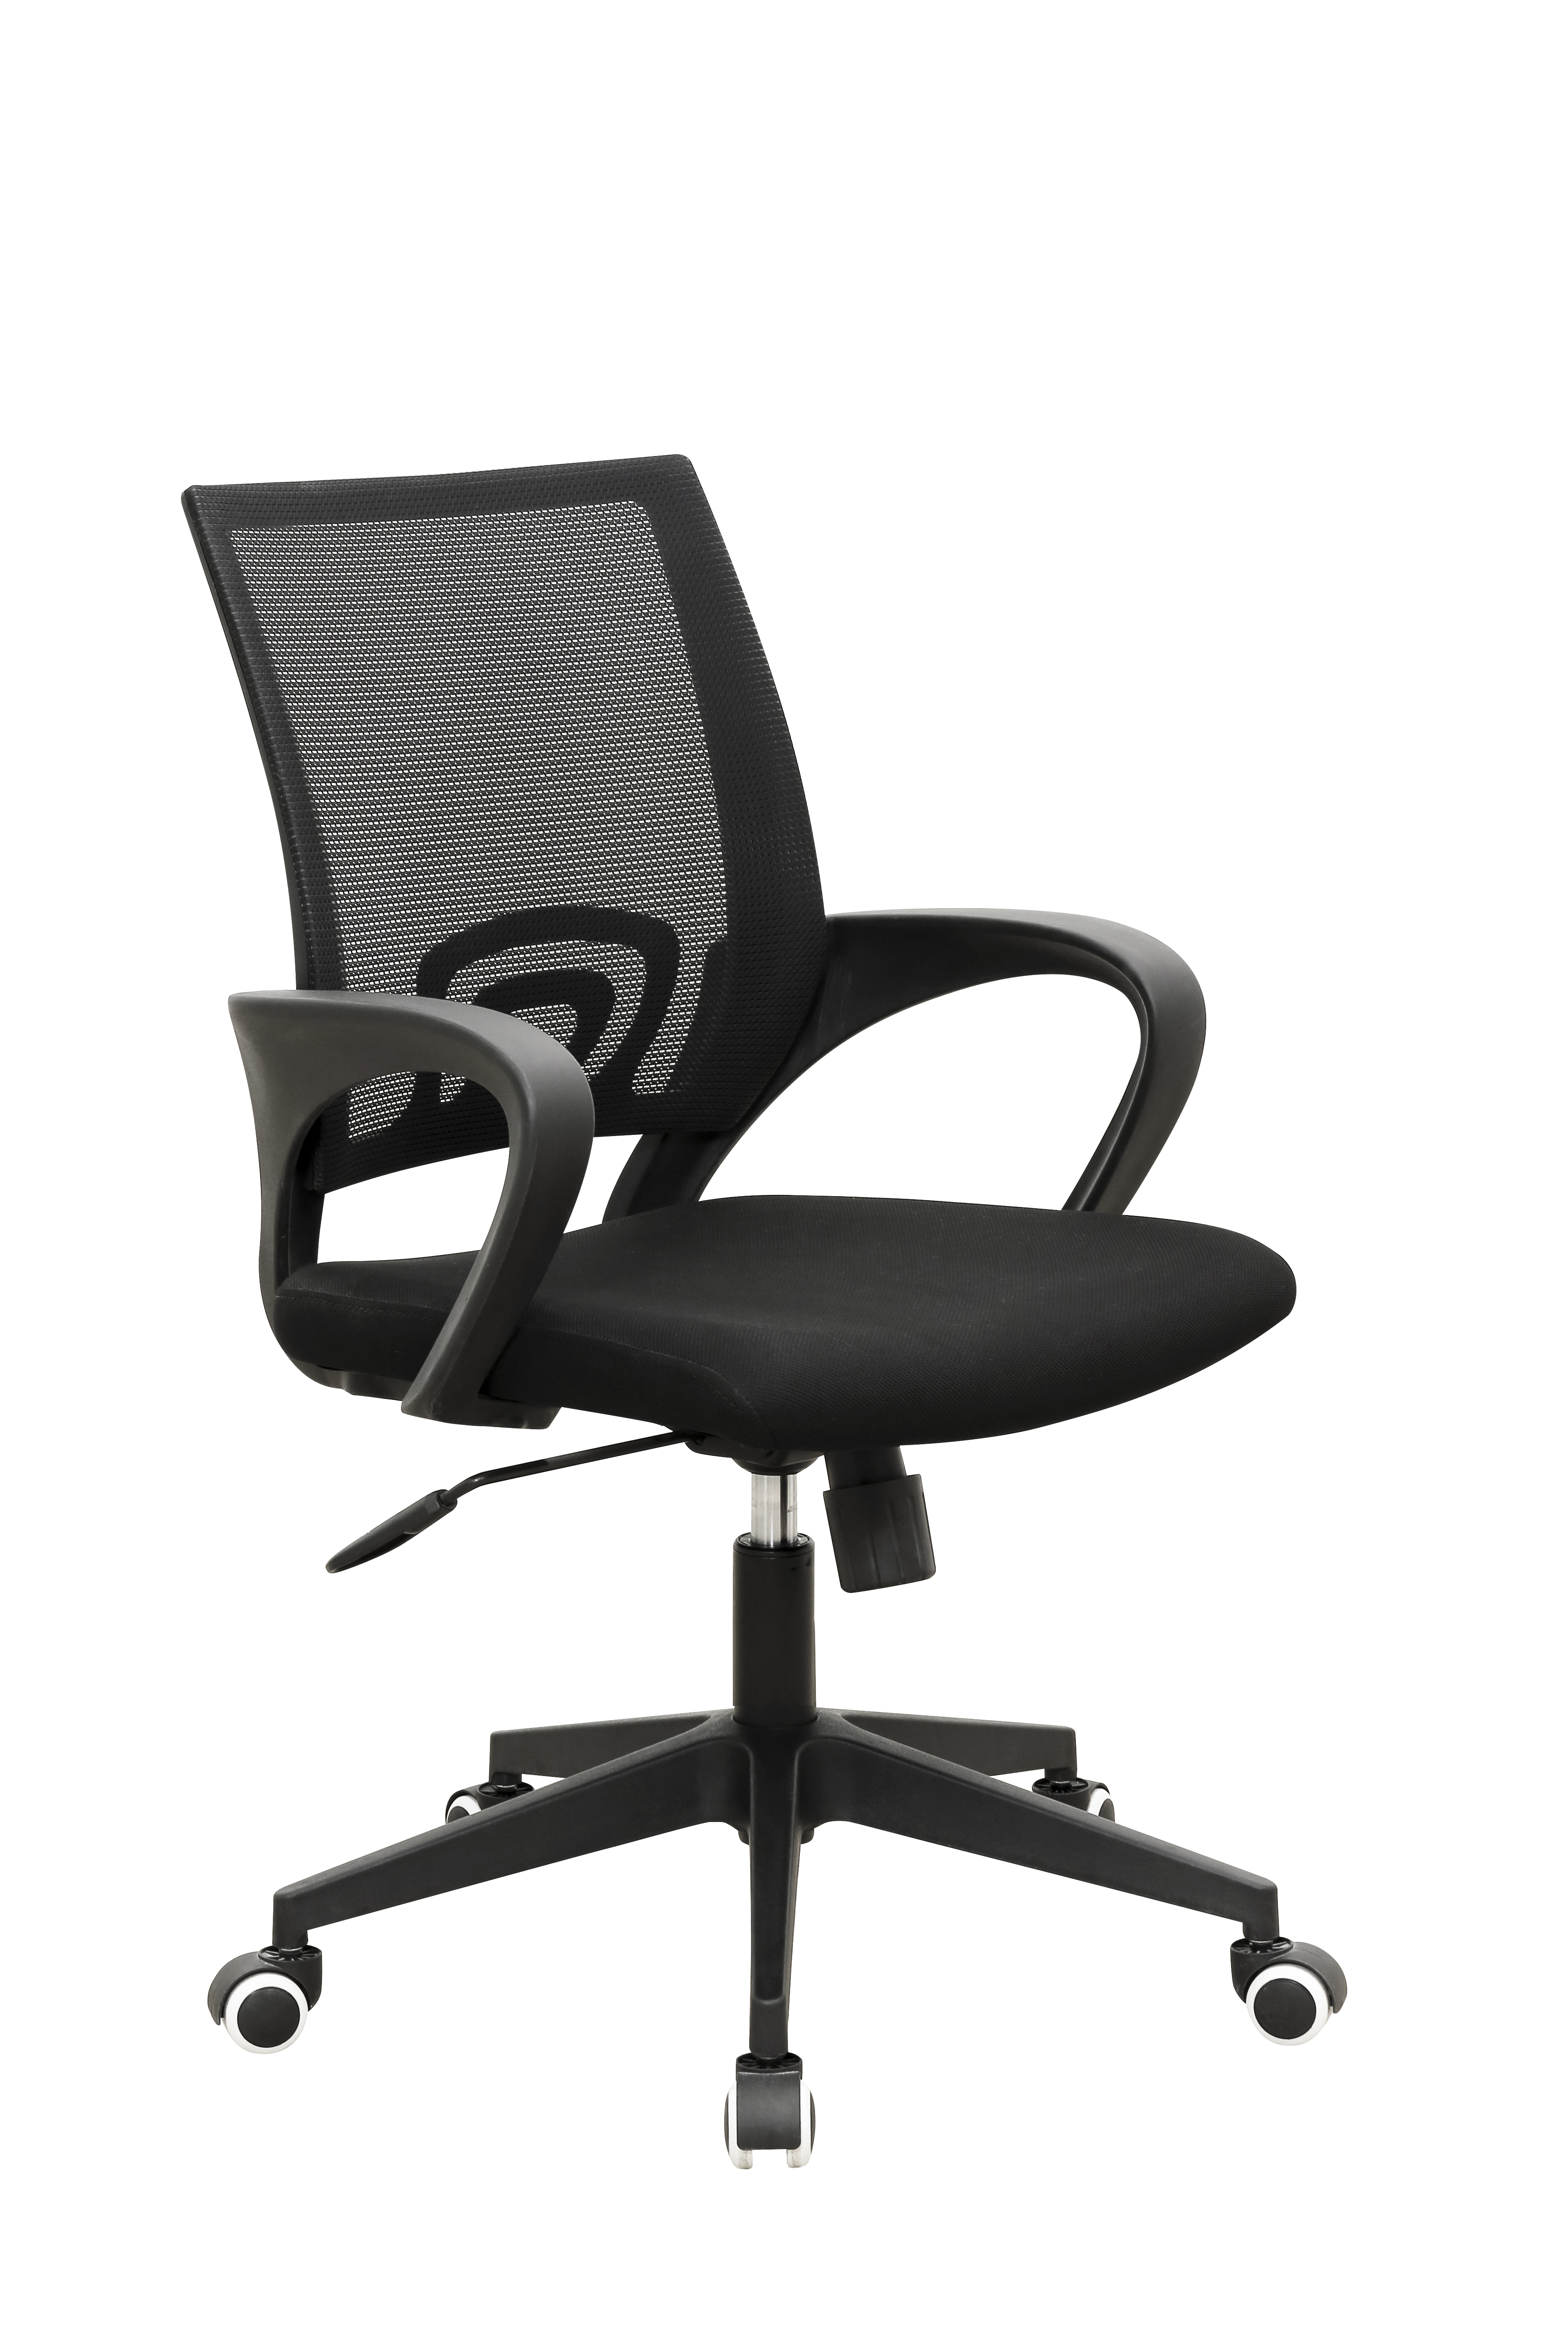 GSA002職員椅